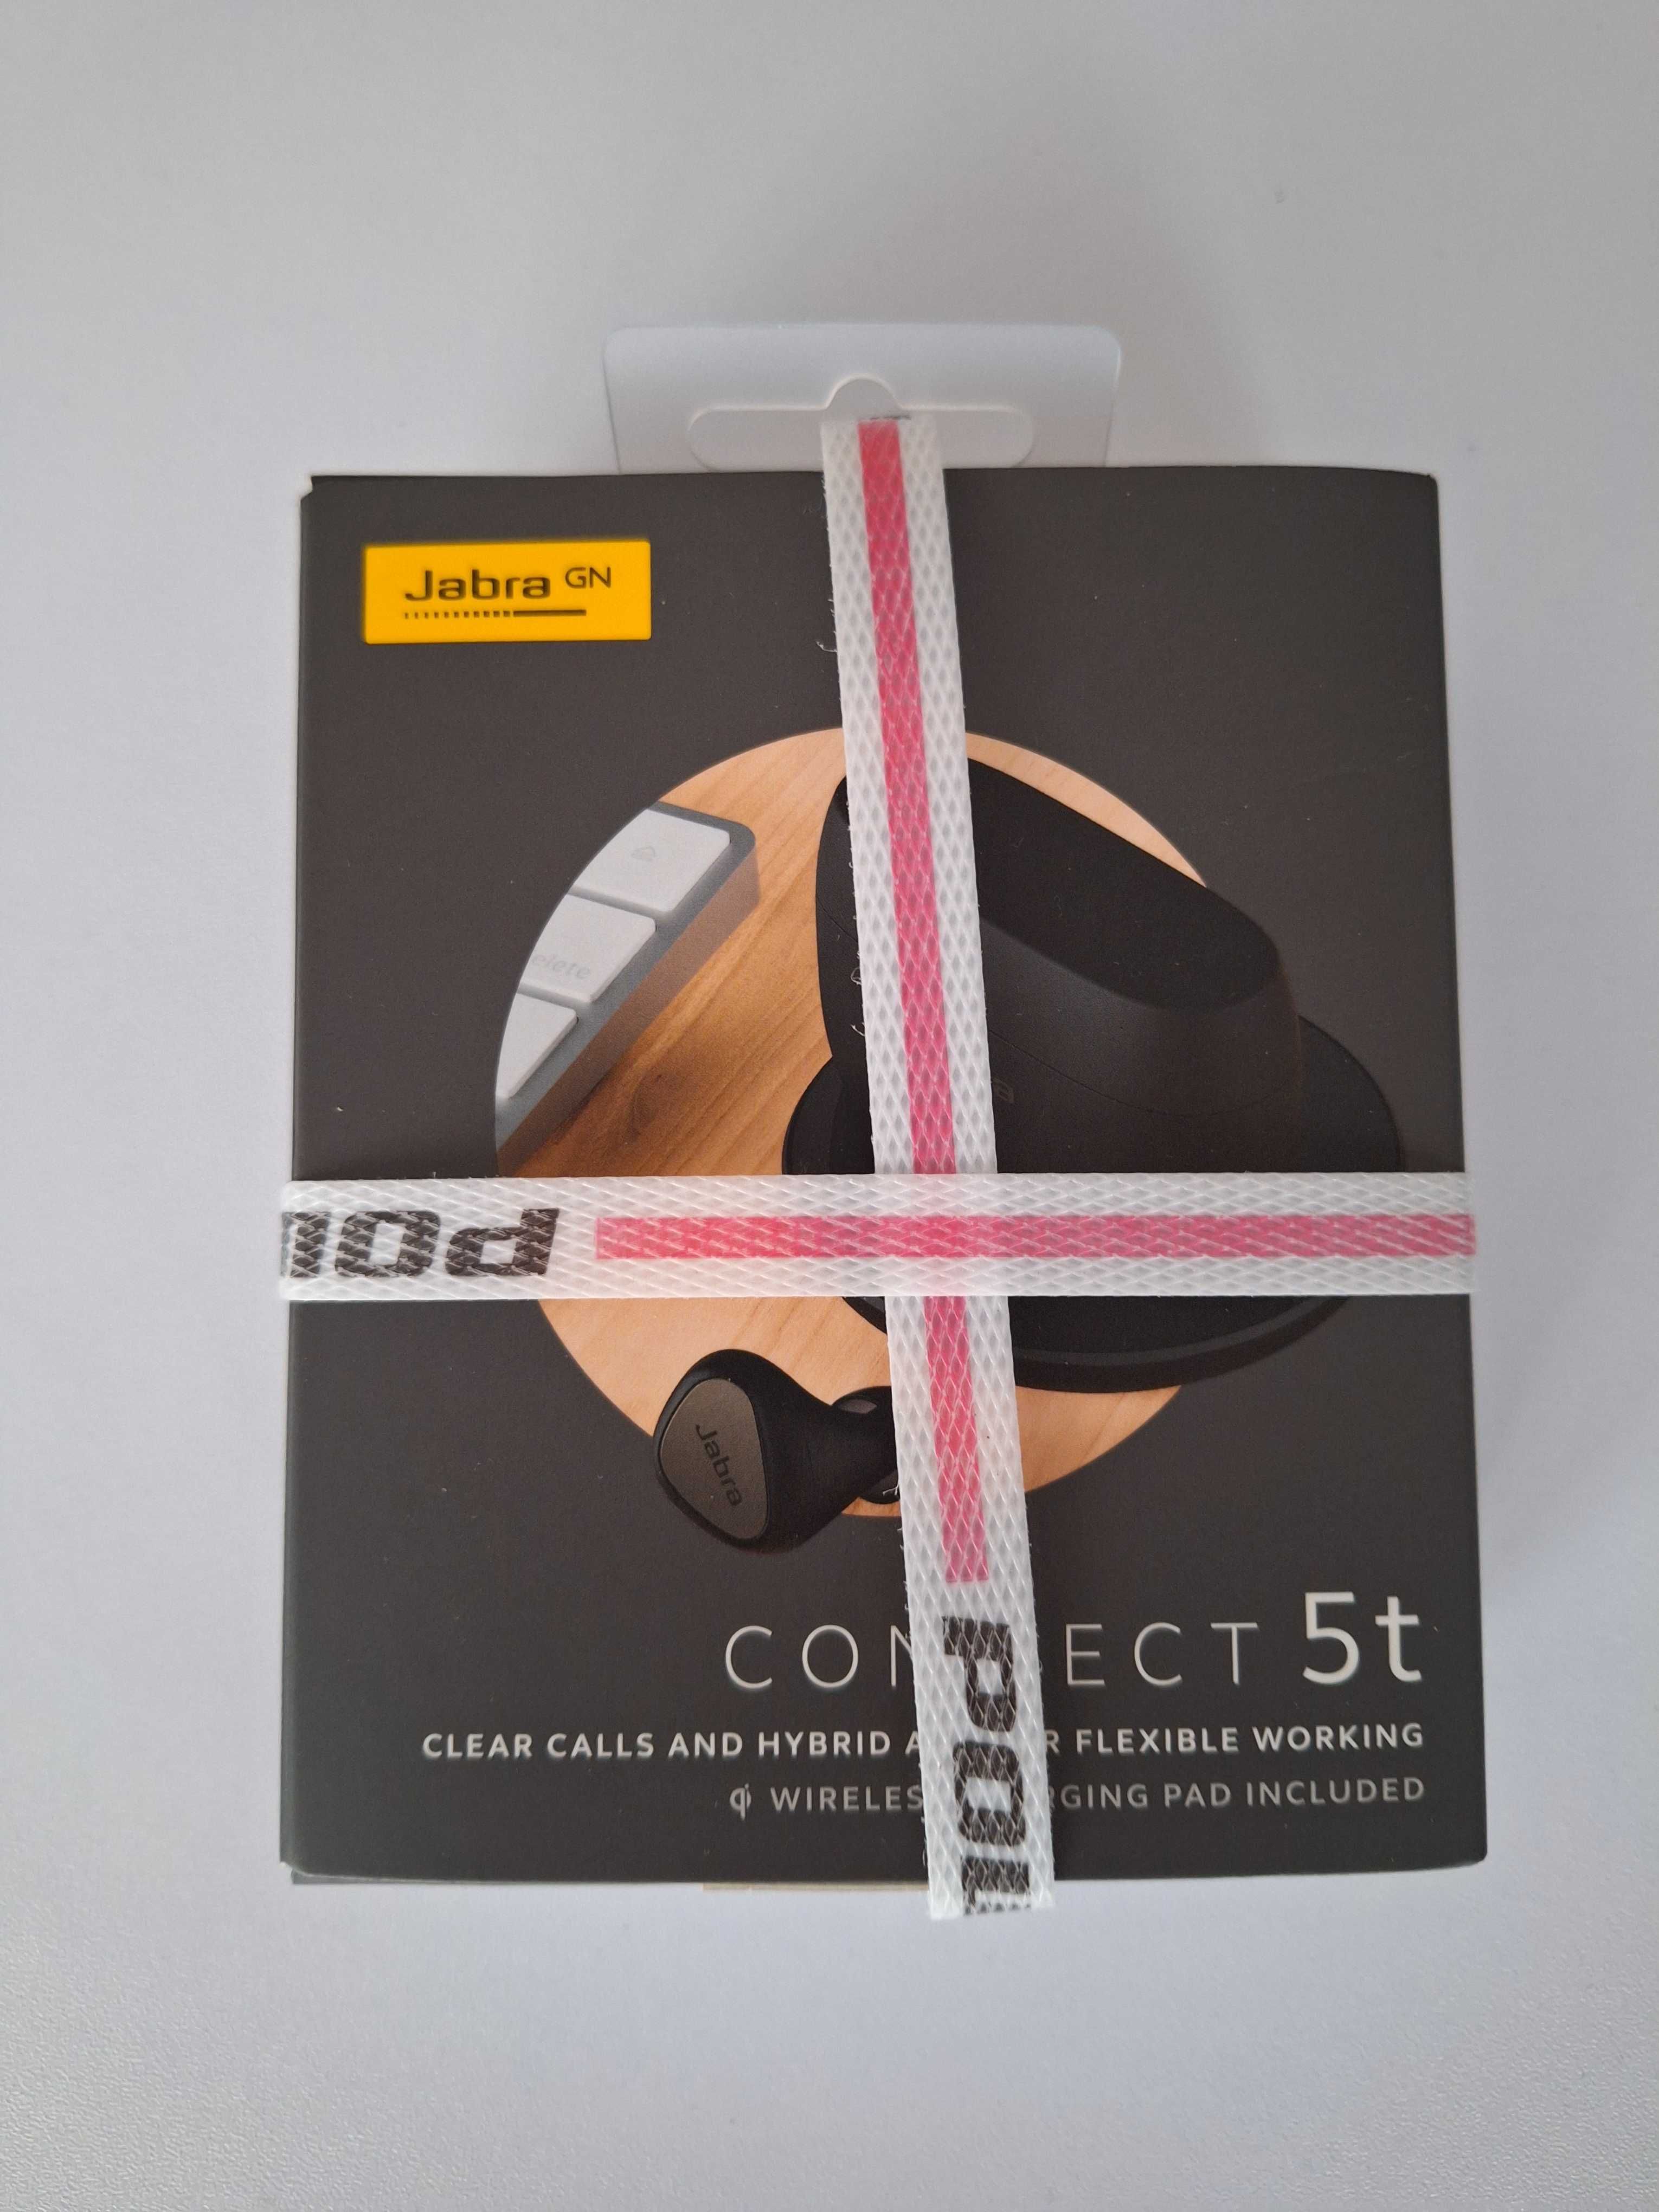 Bezprzewodowe słuchawki Jabra connect 5g